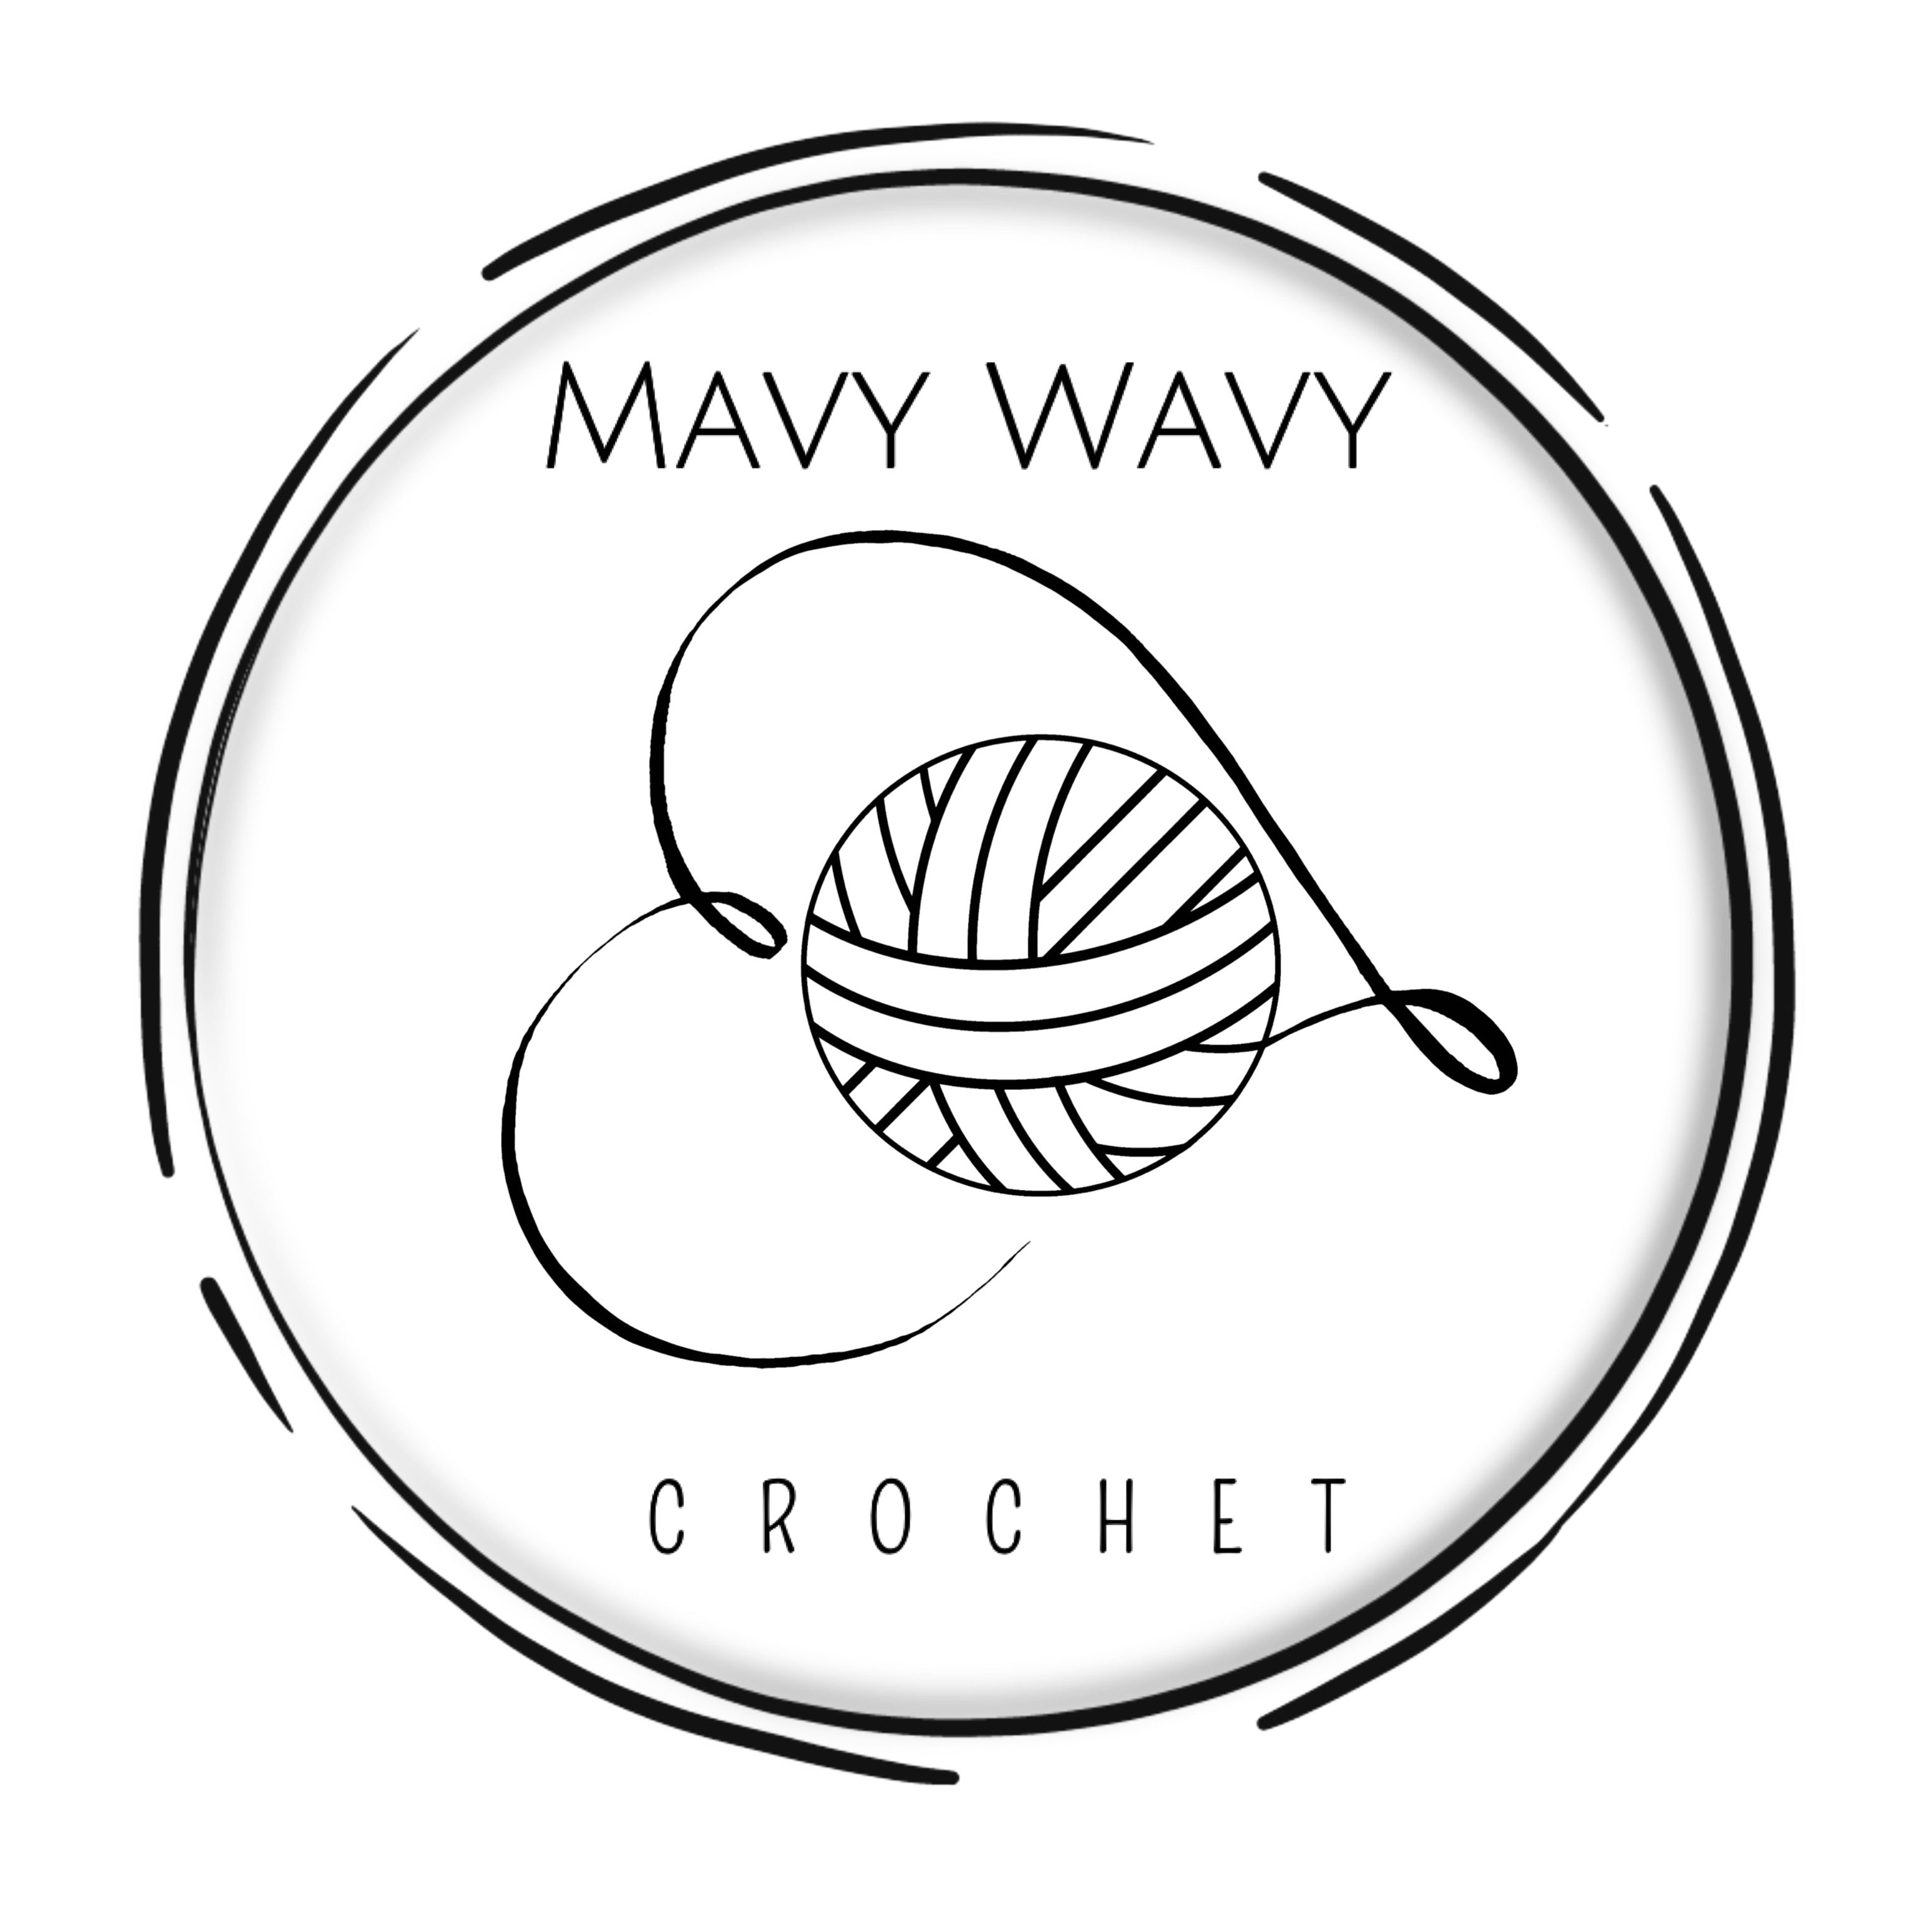 Mavy Wavy Crochet